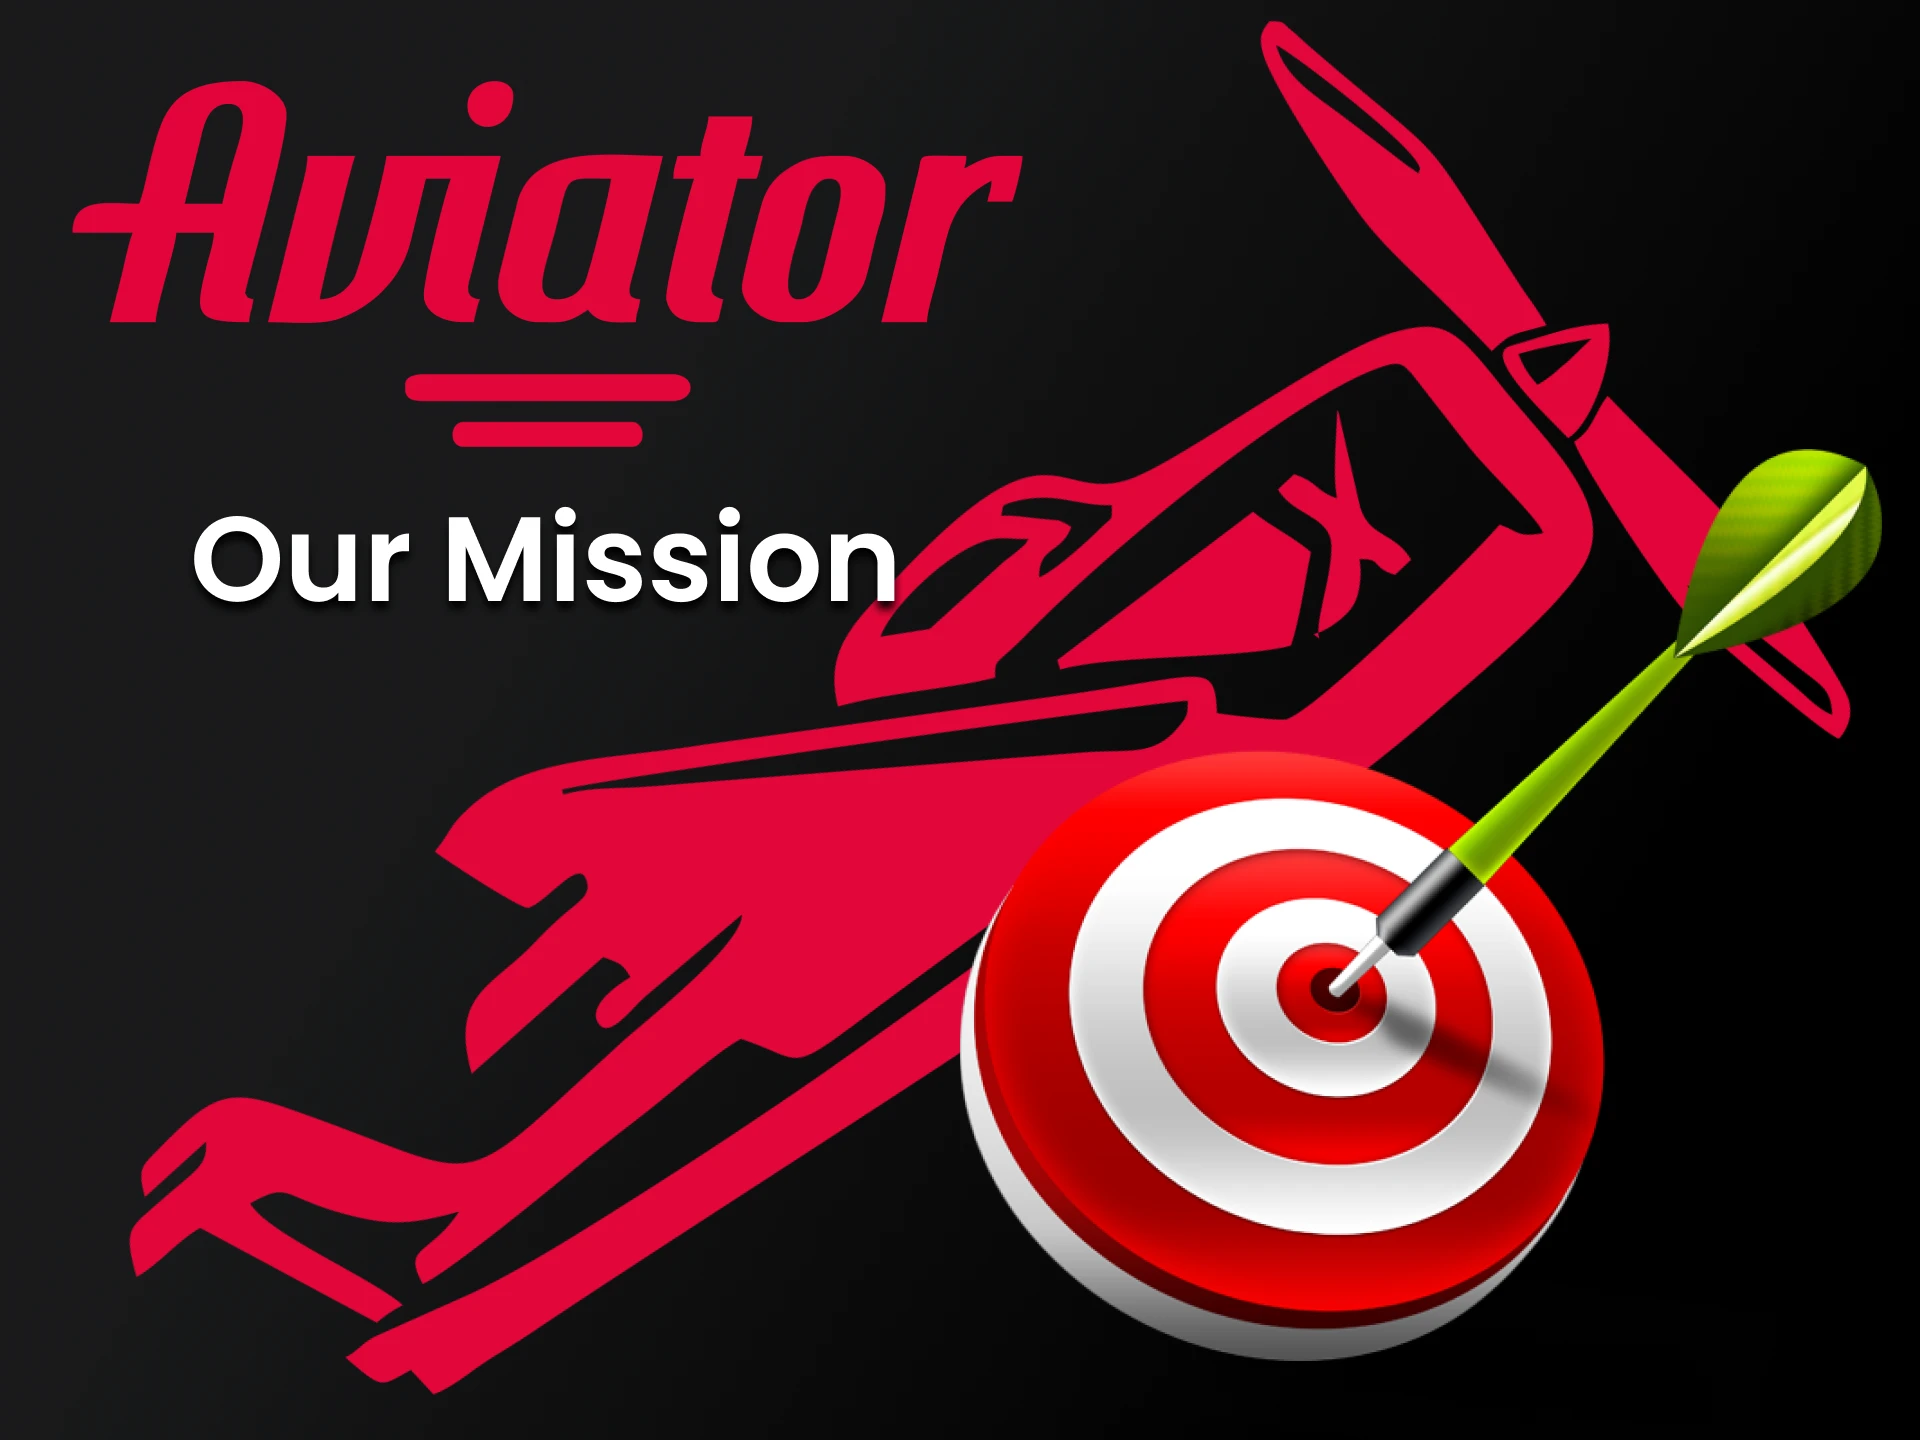 Obtenha novas informações sobre a equipe do Aviator nesta página.